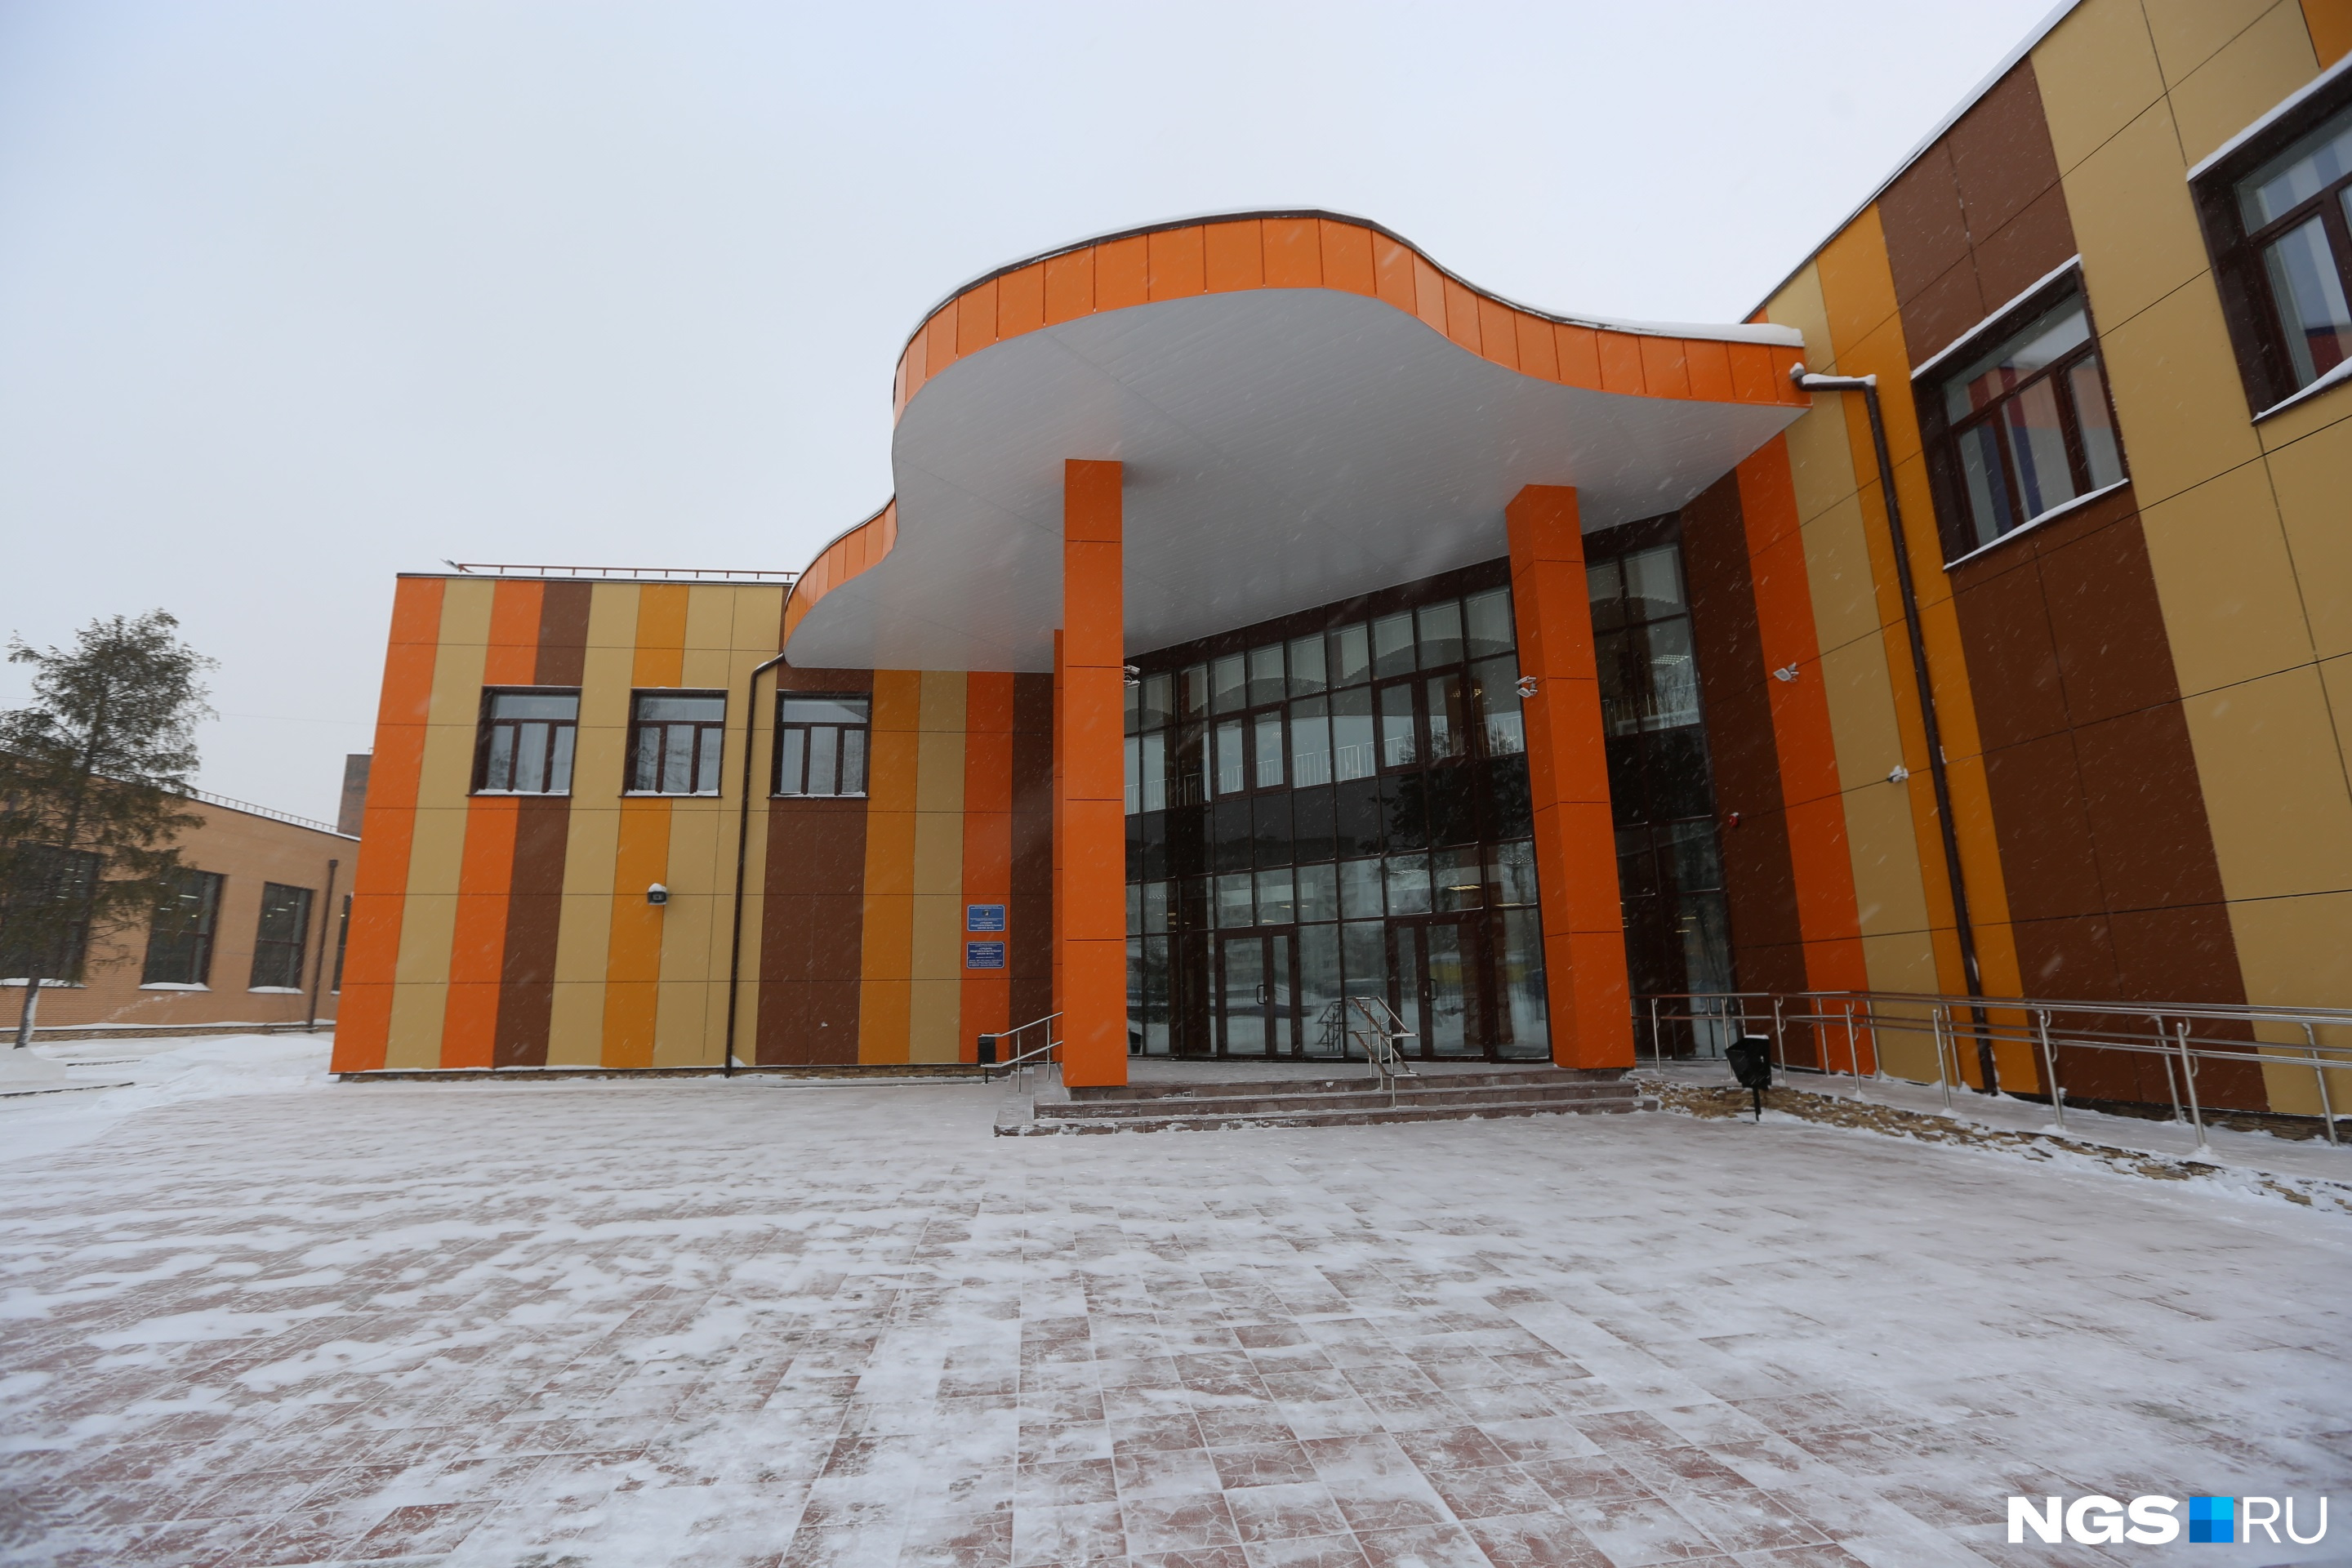 Одну из школ «Агросервис» построил на Ключ-Камышенском плато — ее <a href="https://ngs.ru/text/gorod/2017/12/28/53324911/" class="_" target="_blank">открыли в 2017 году</a>